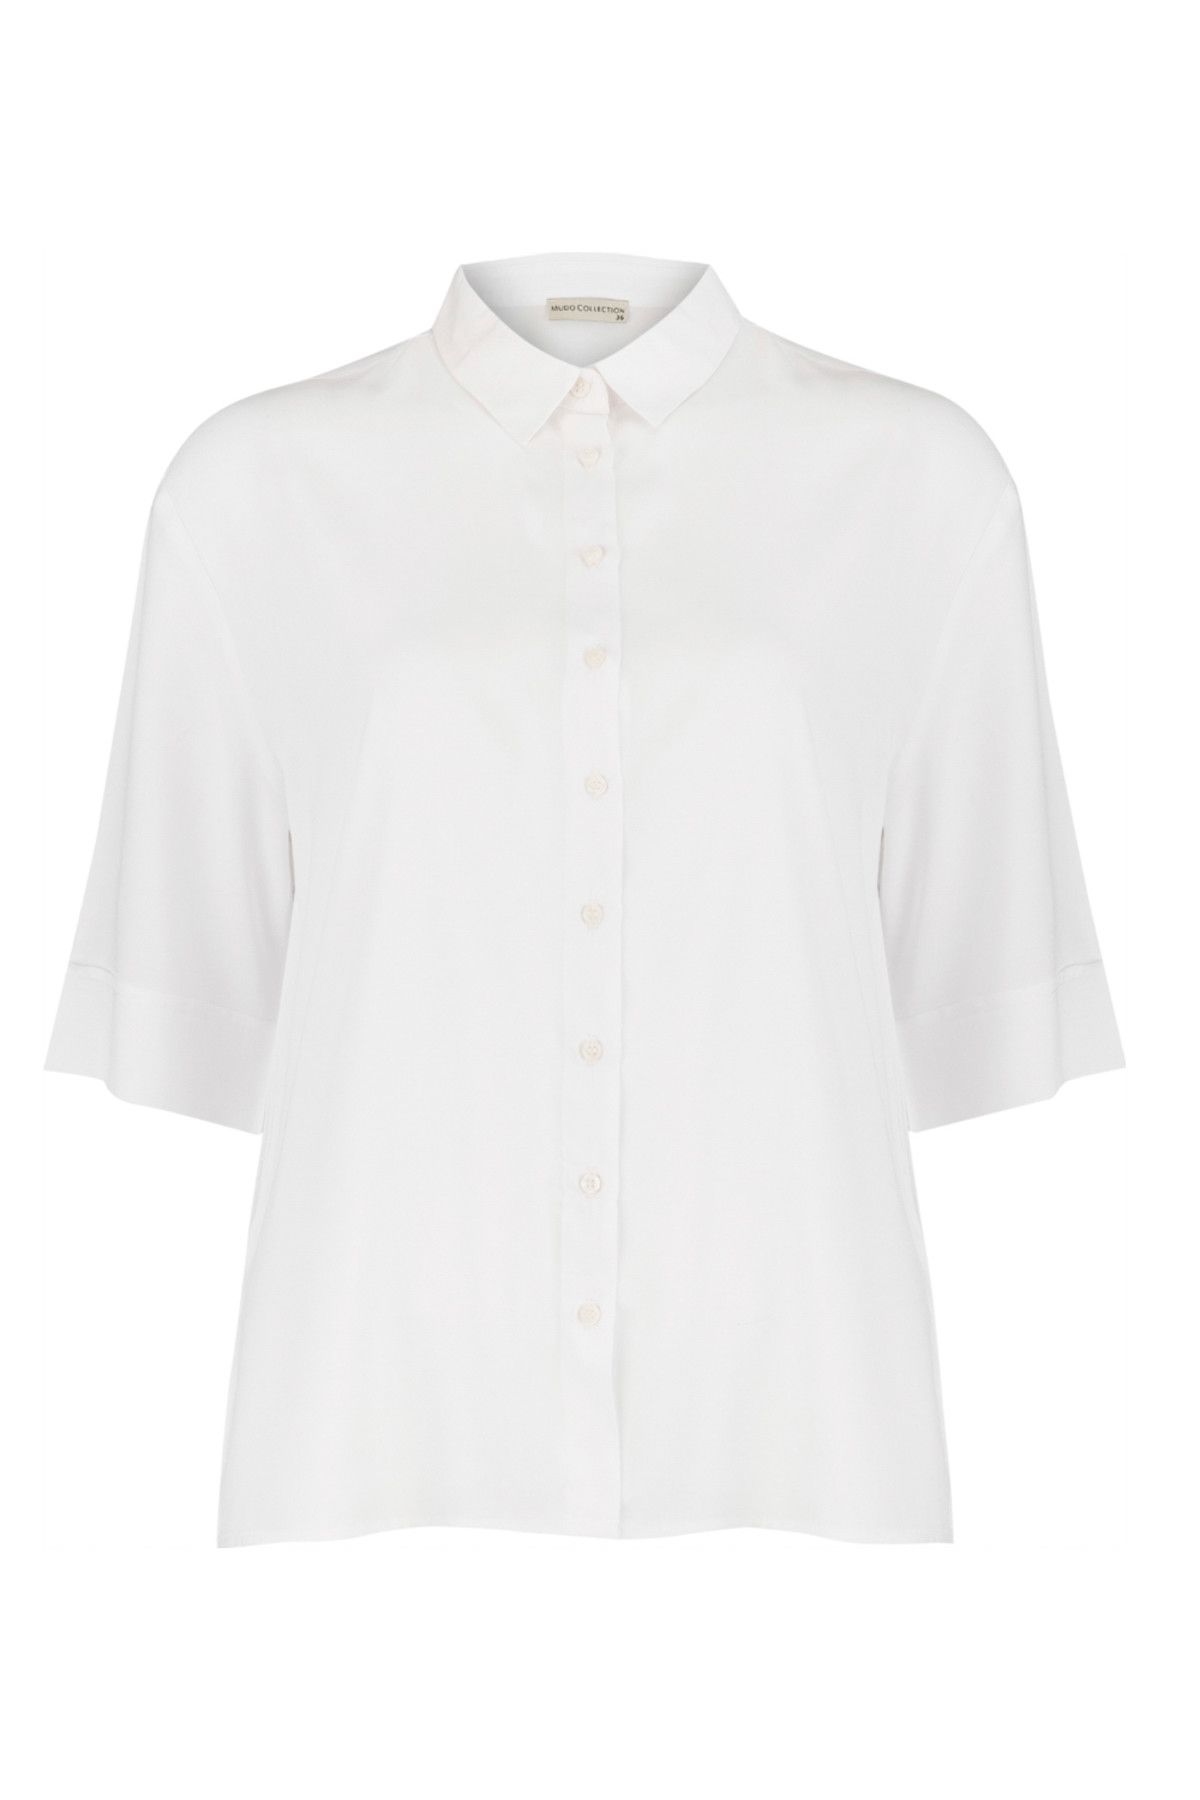 Mudo Kadın Kırık Beyaz Gömlek 1191169